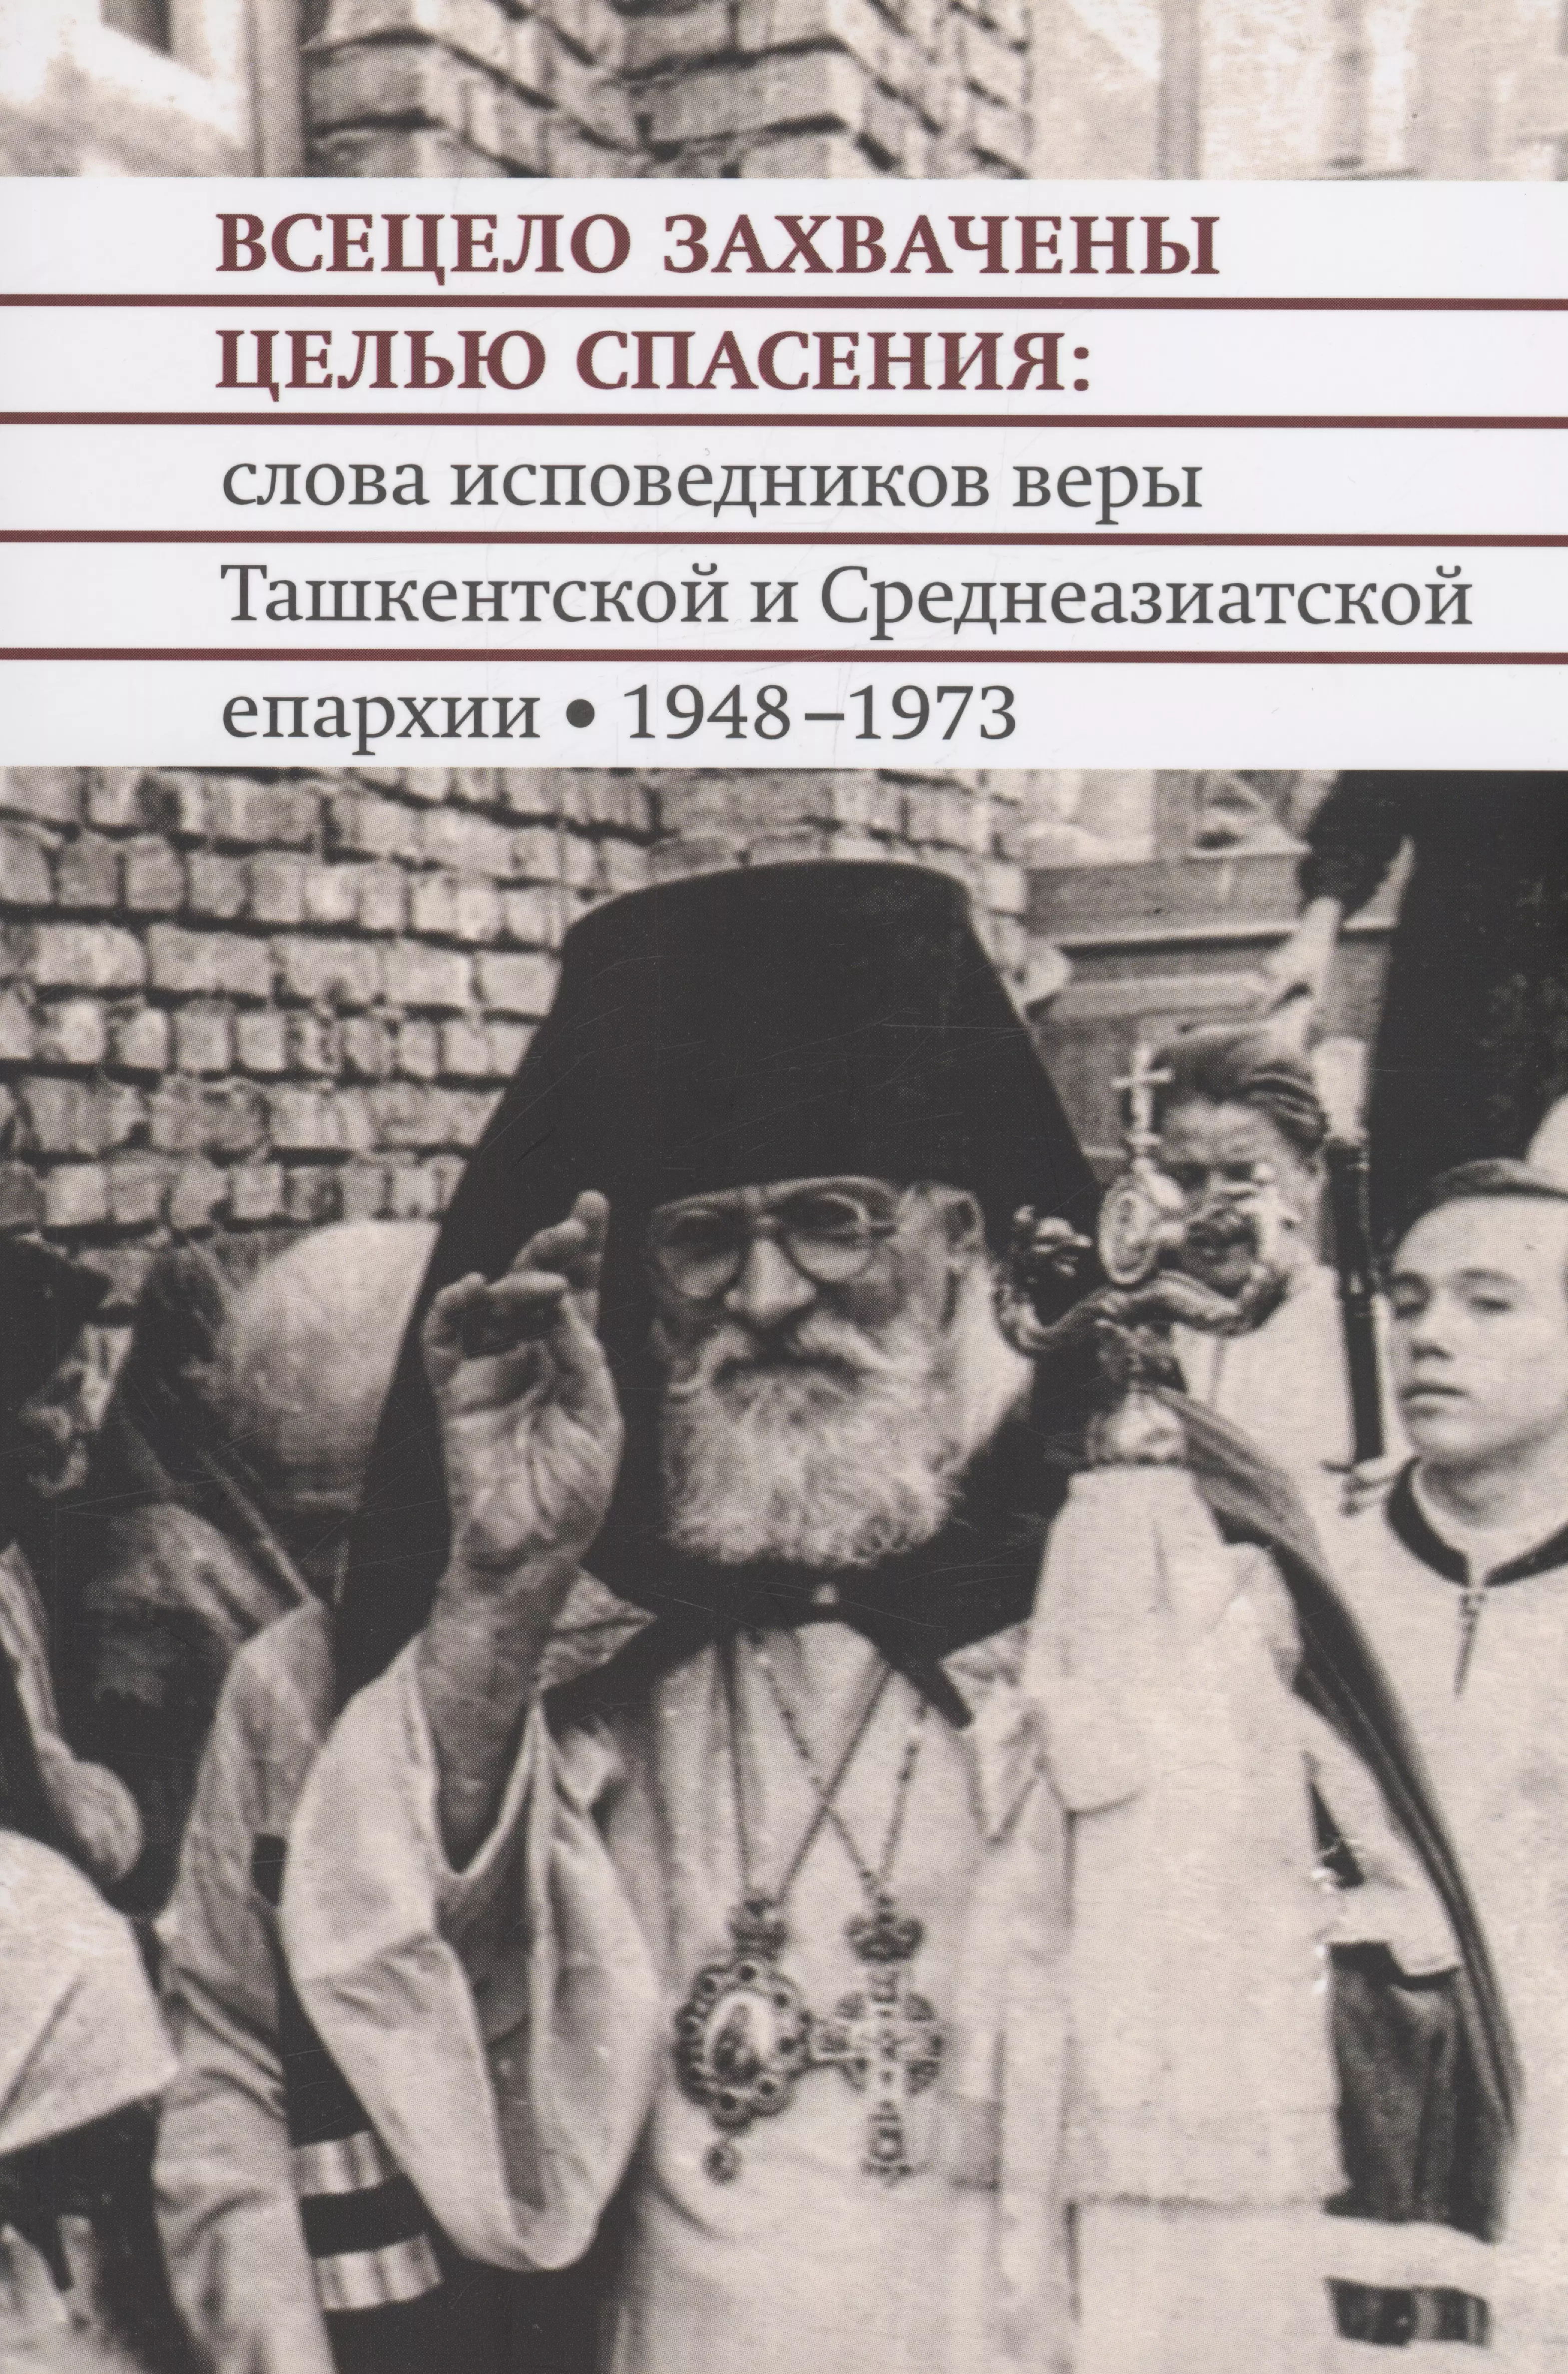 Всецело захвачены целью спасения: слова исповедников веры Ташкентской и Среднеазиатской епархии 1948-1973 годы